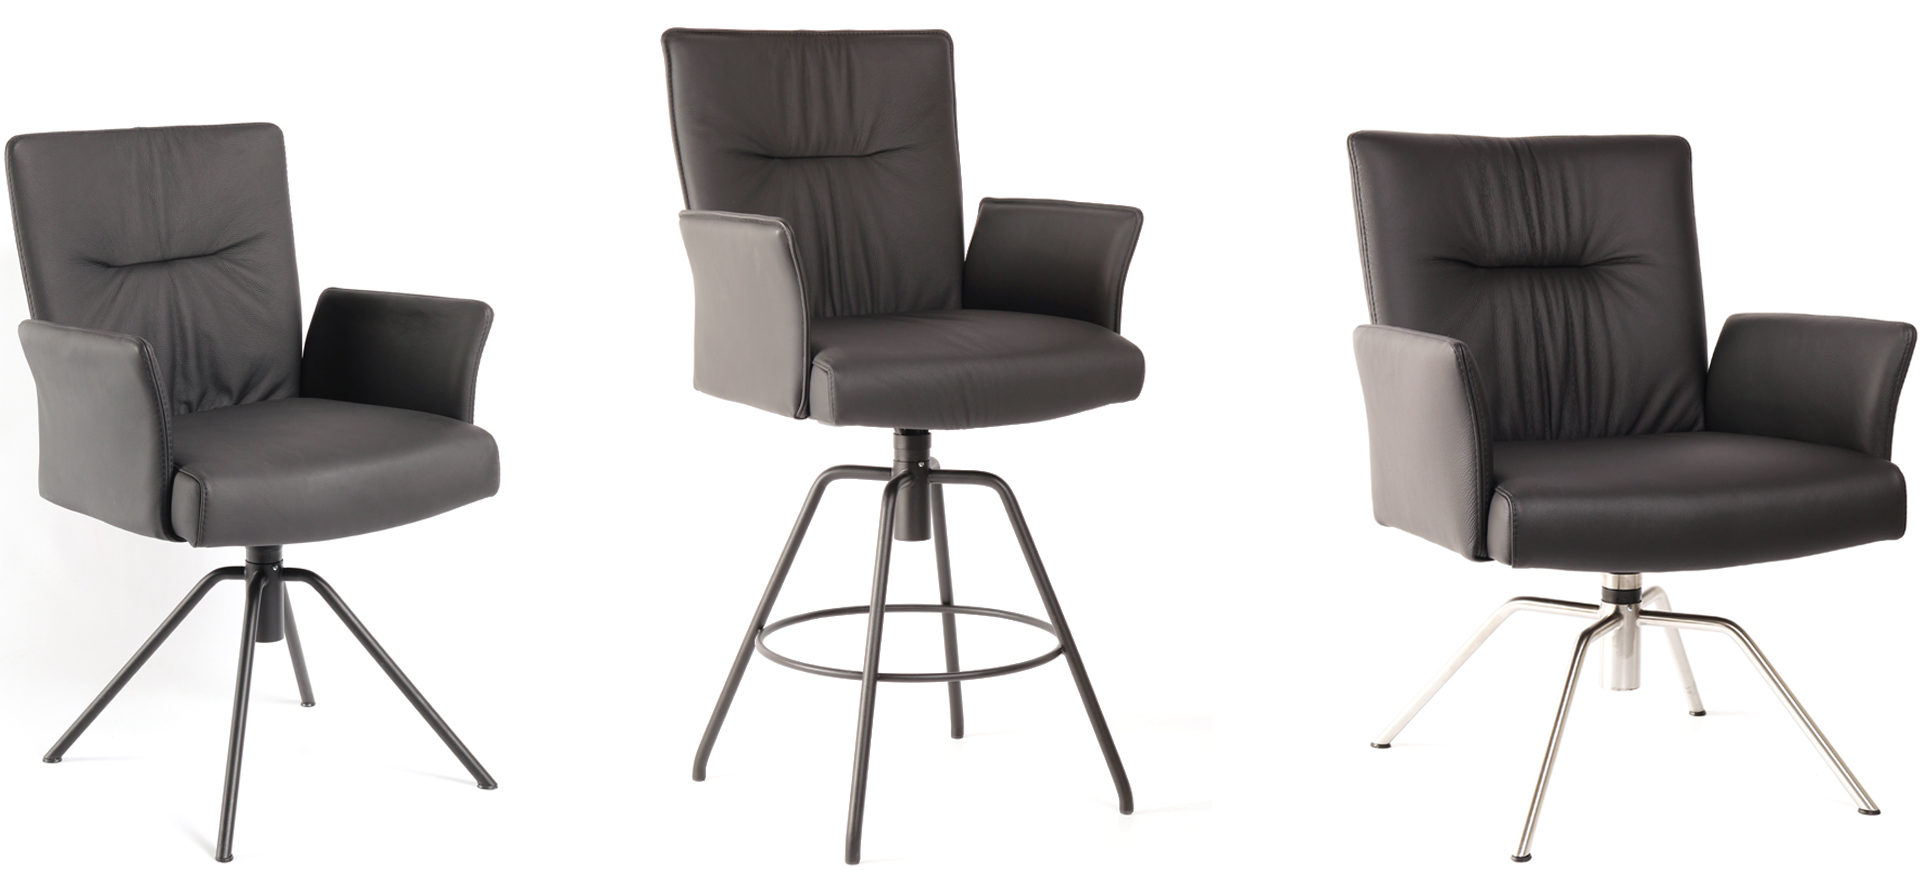 Das Stuhlsystem WK 706 umfasst Stühle, Barhocker und Lounge-Sessel